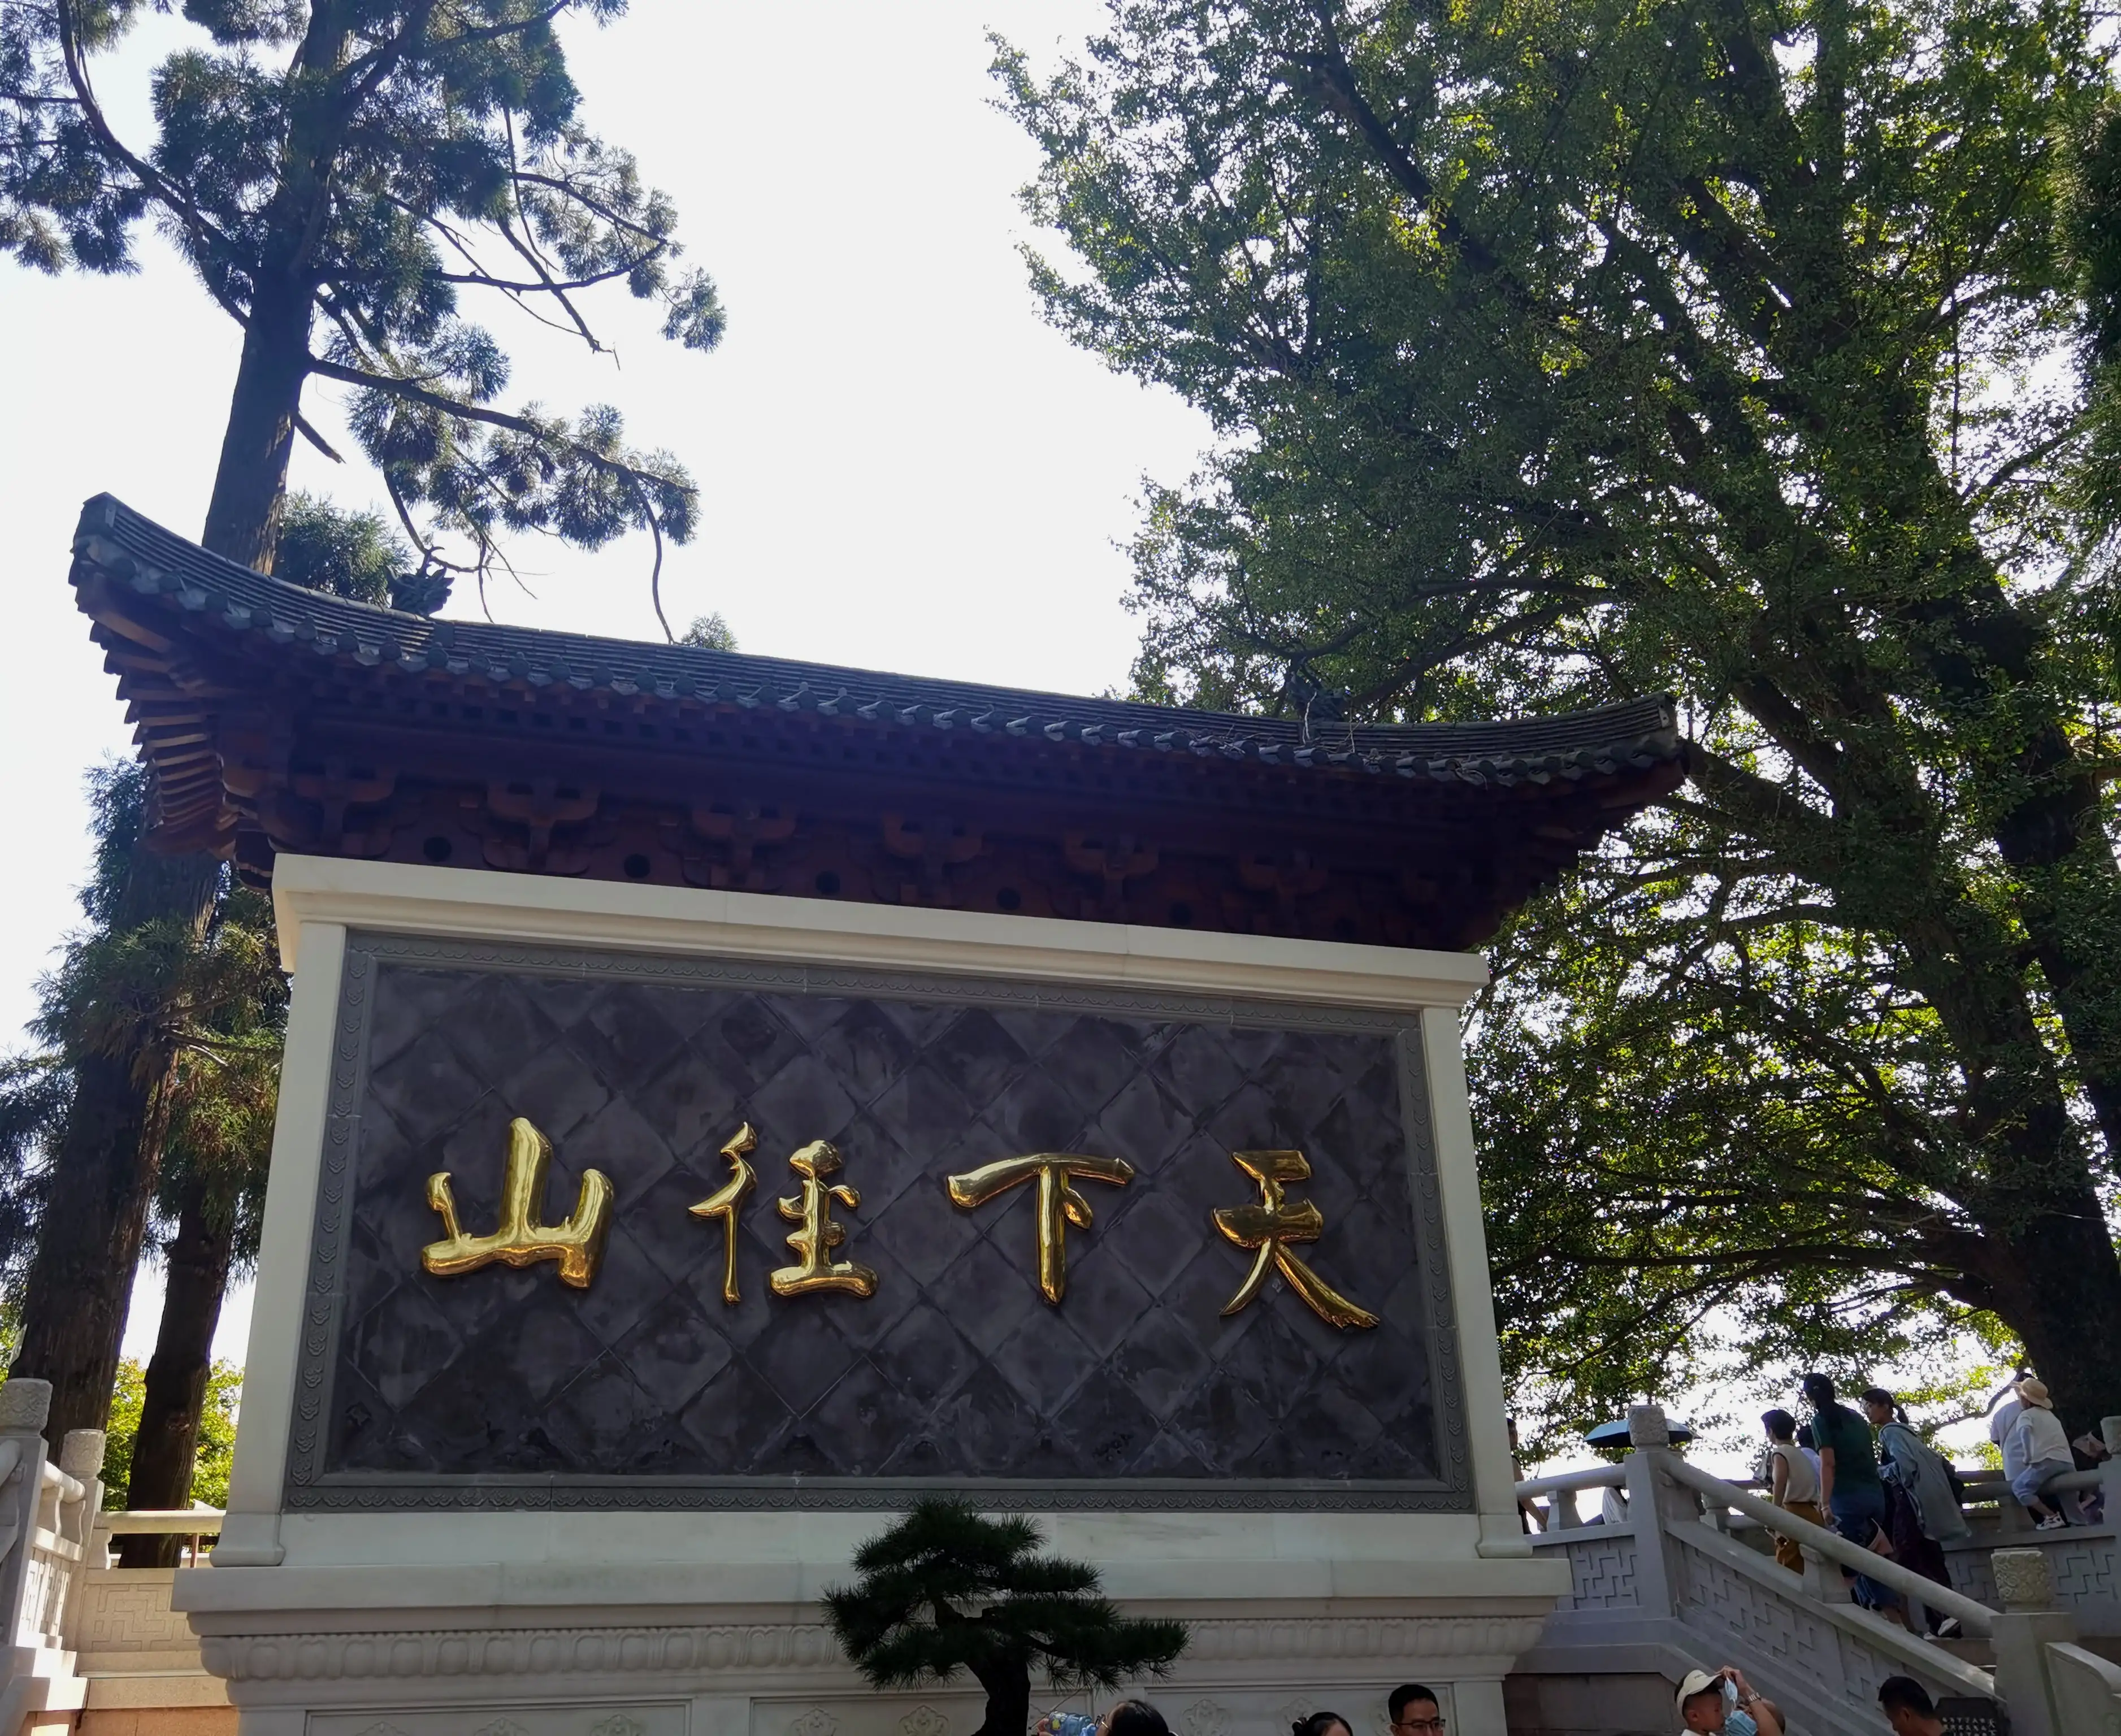 杭州余杭径山寺
径山寺又名万寿禅寺，创建于唐天宝年间，是距今有1